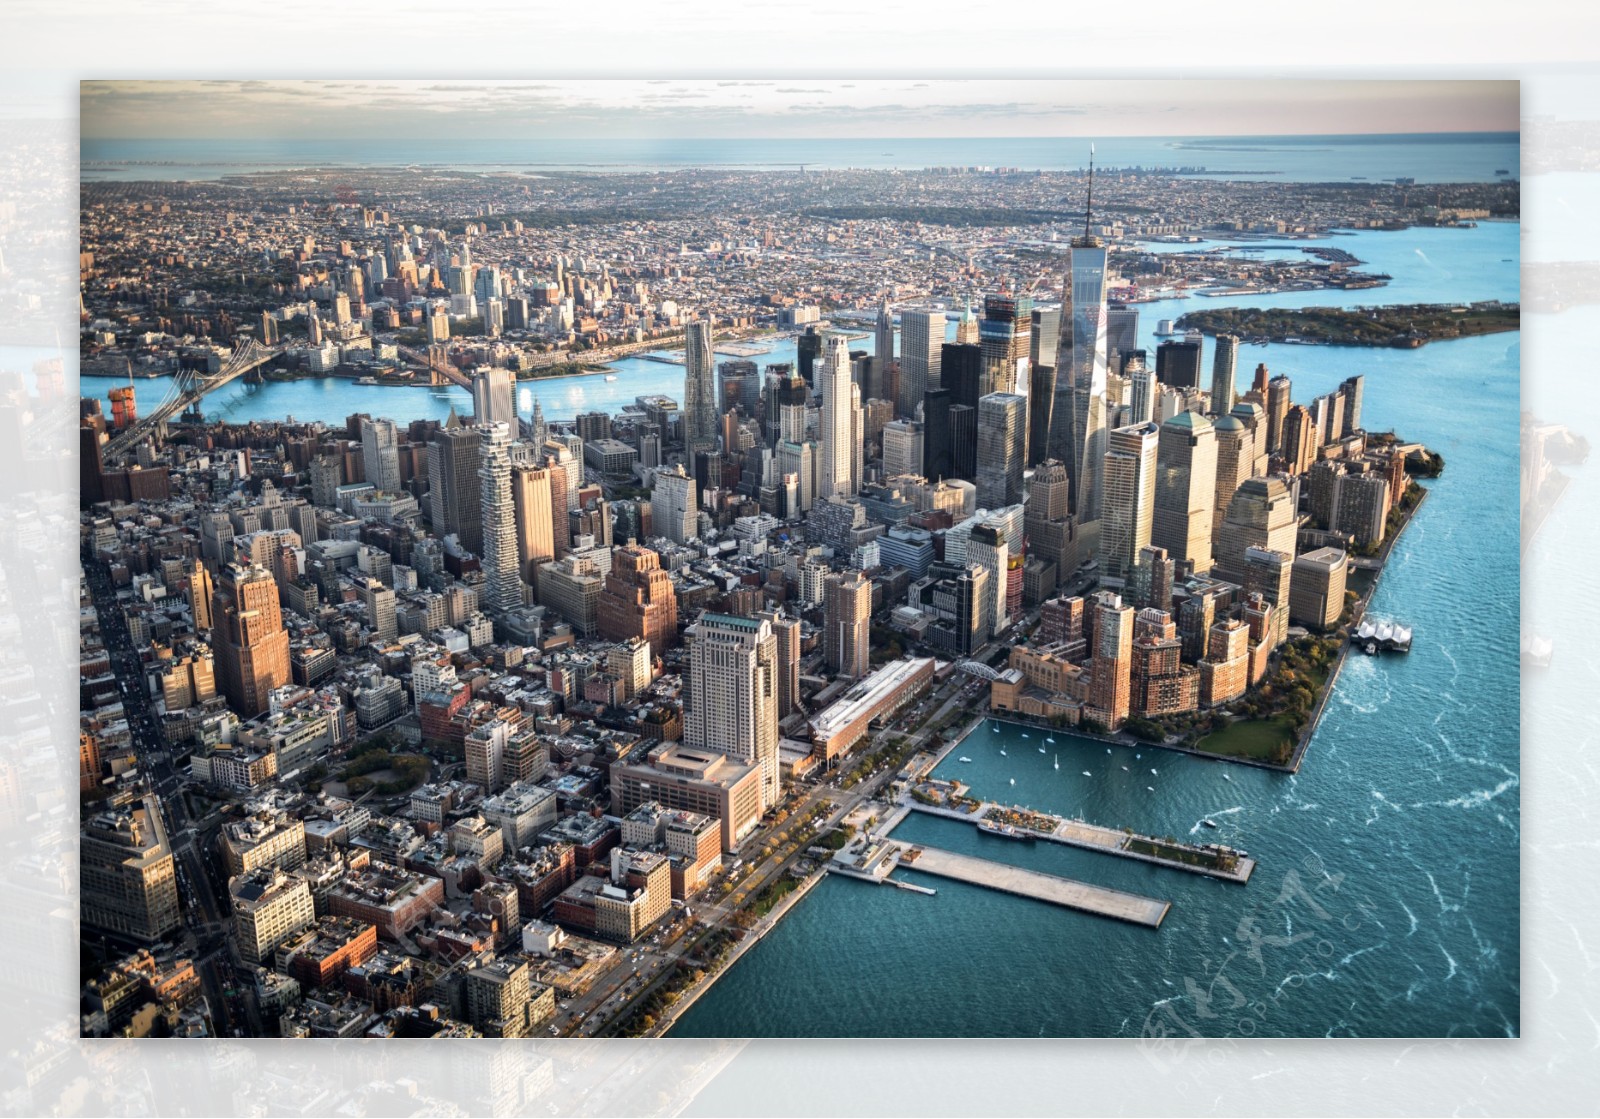 曼哈顿岛的鸟瞰图纽约设计元素